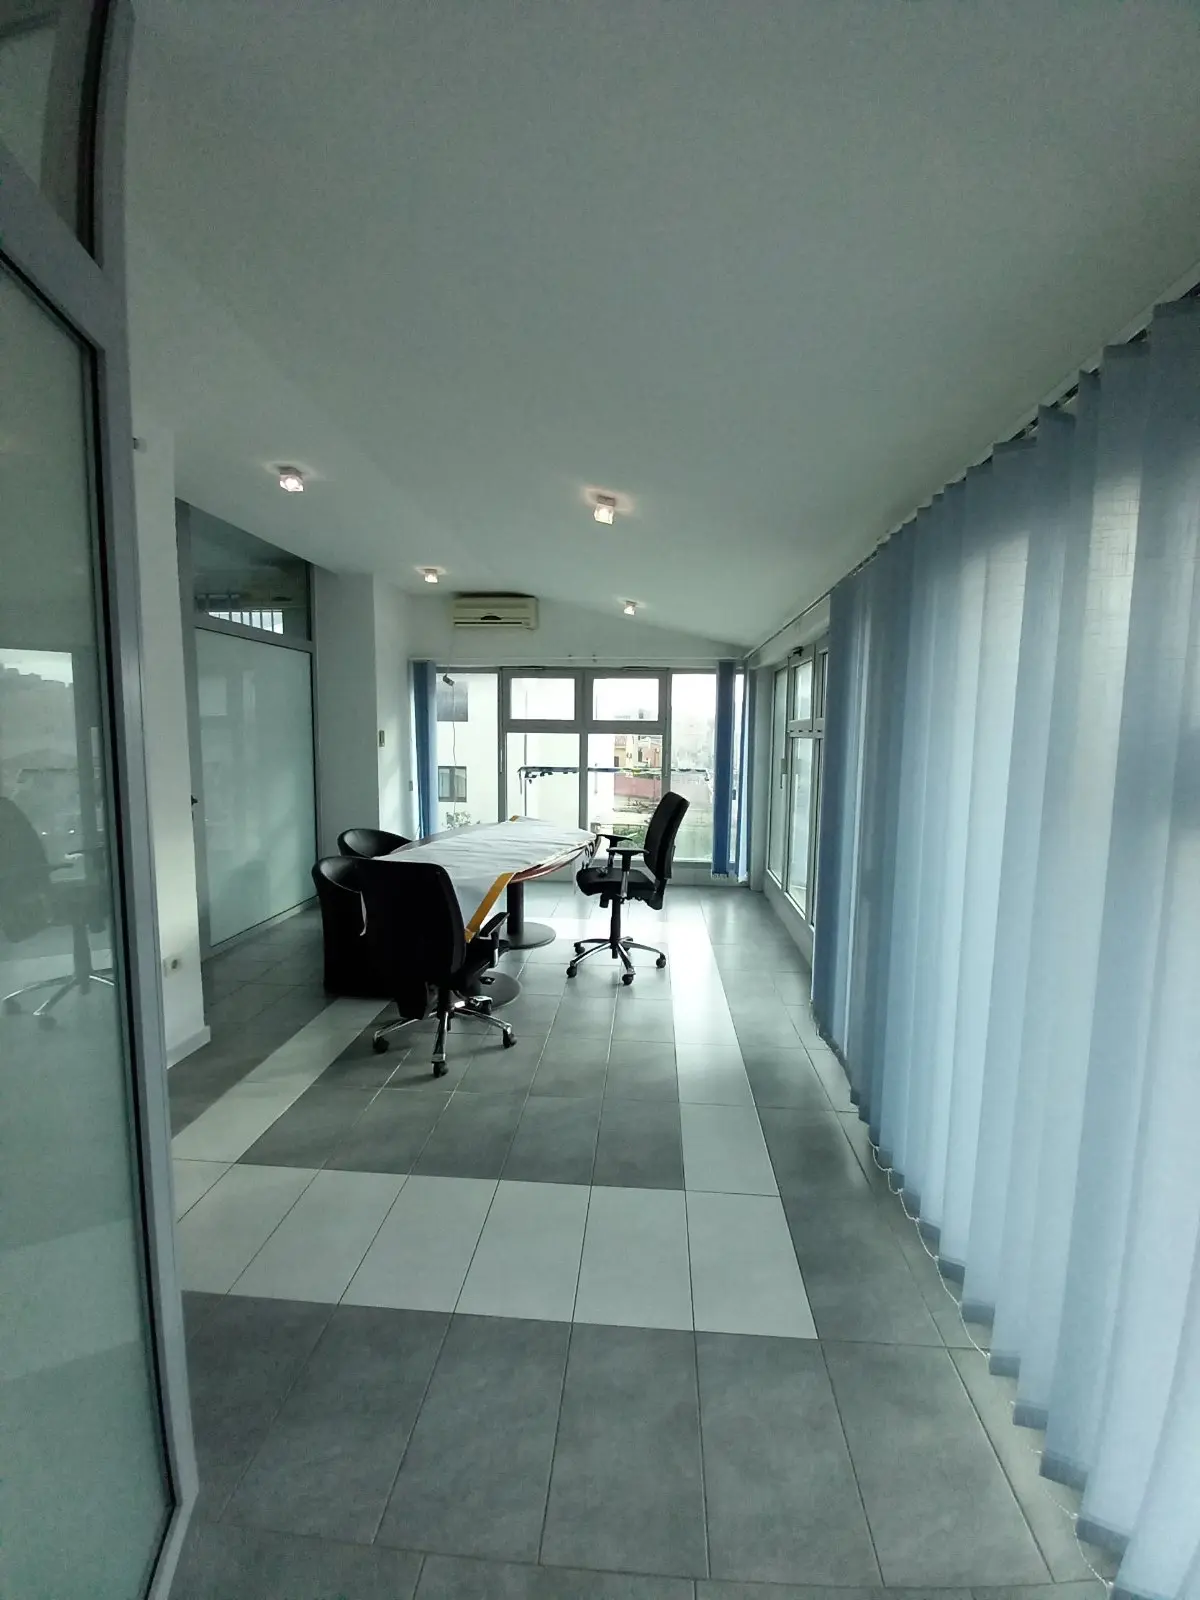 Jedna od sest postojecih kancelarijskih prostora